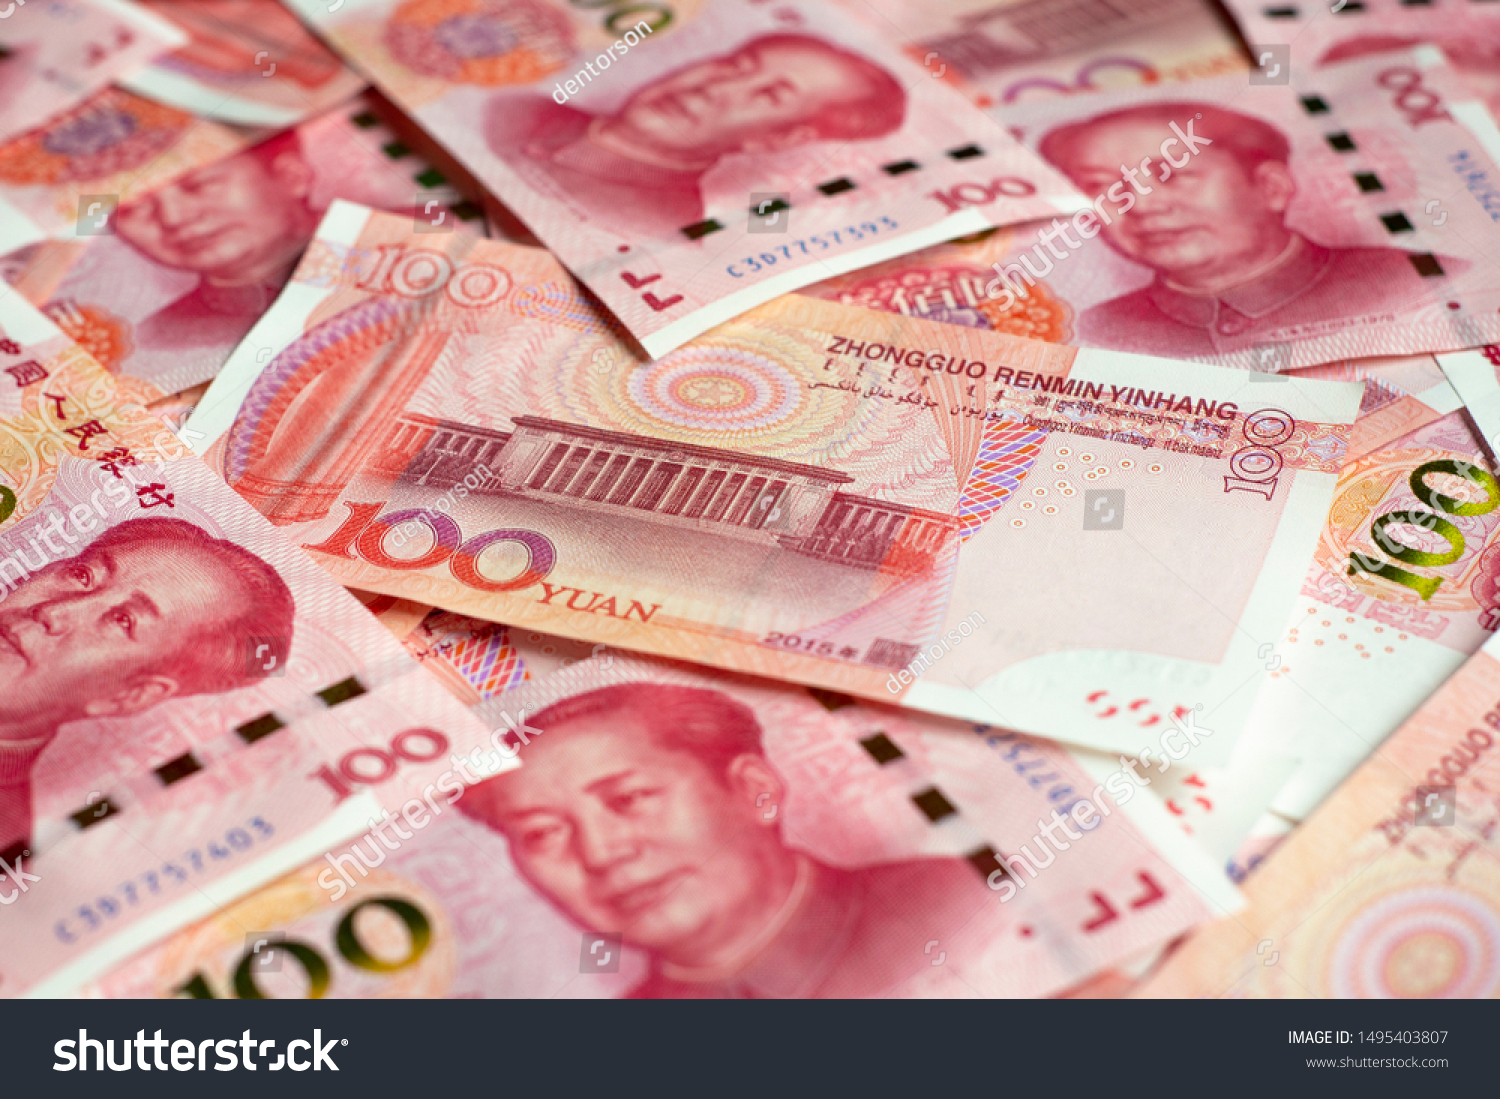 1000000 рублей в юанях. Китайский юань. Валюта Китая. Доллар евро юань. Юань купюры.